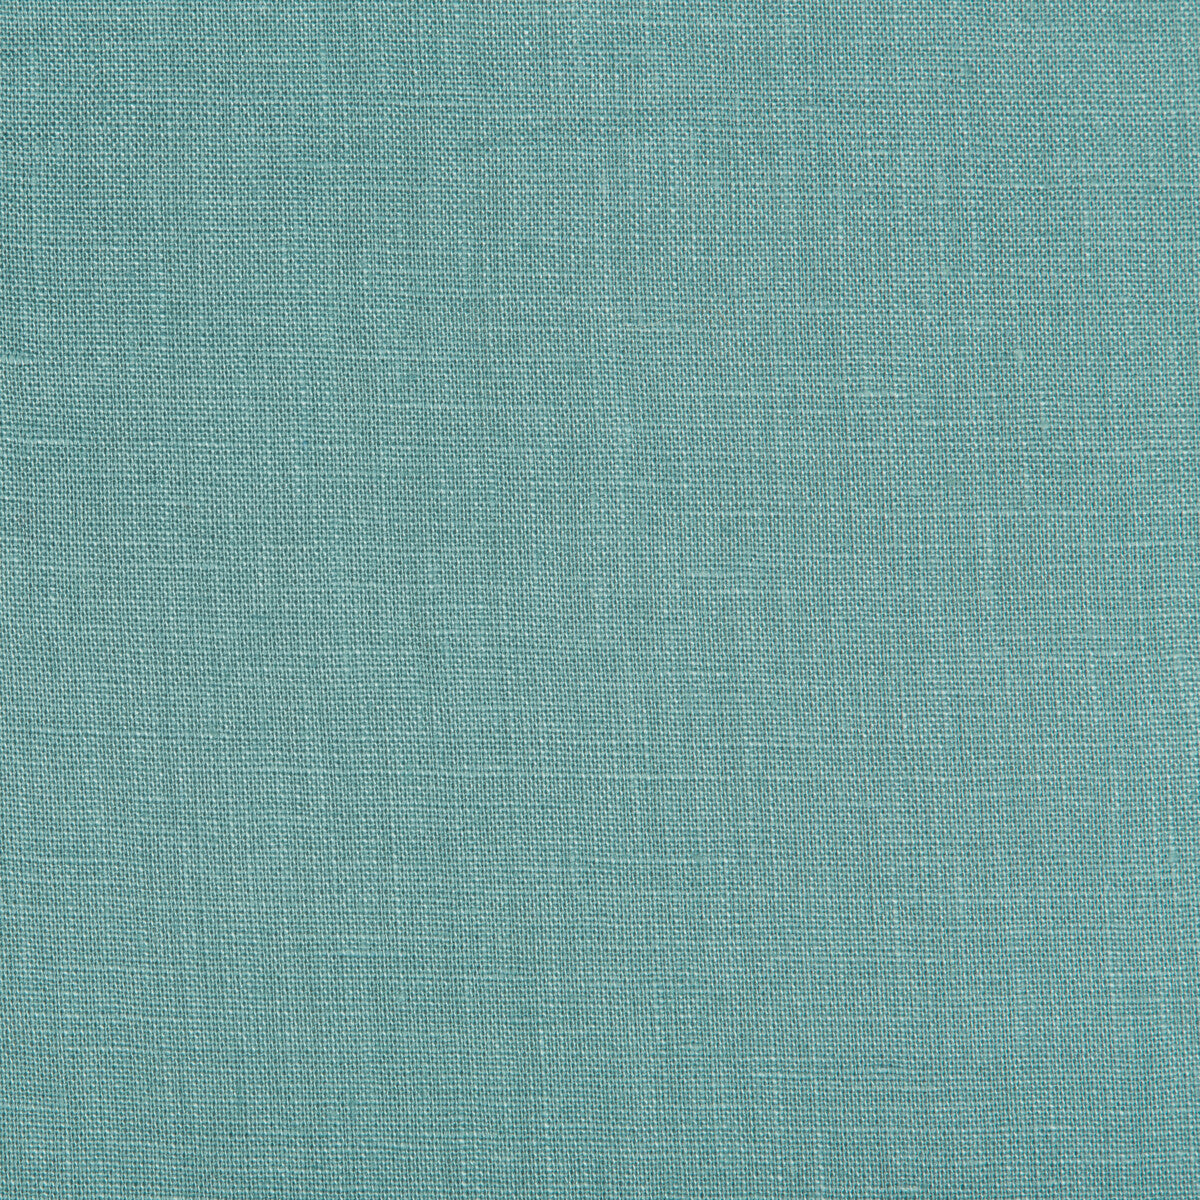 Kravet Basics fabric in 24570-35 color - pattern LA1000.35.0 - by Kravet Basics